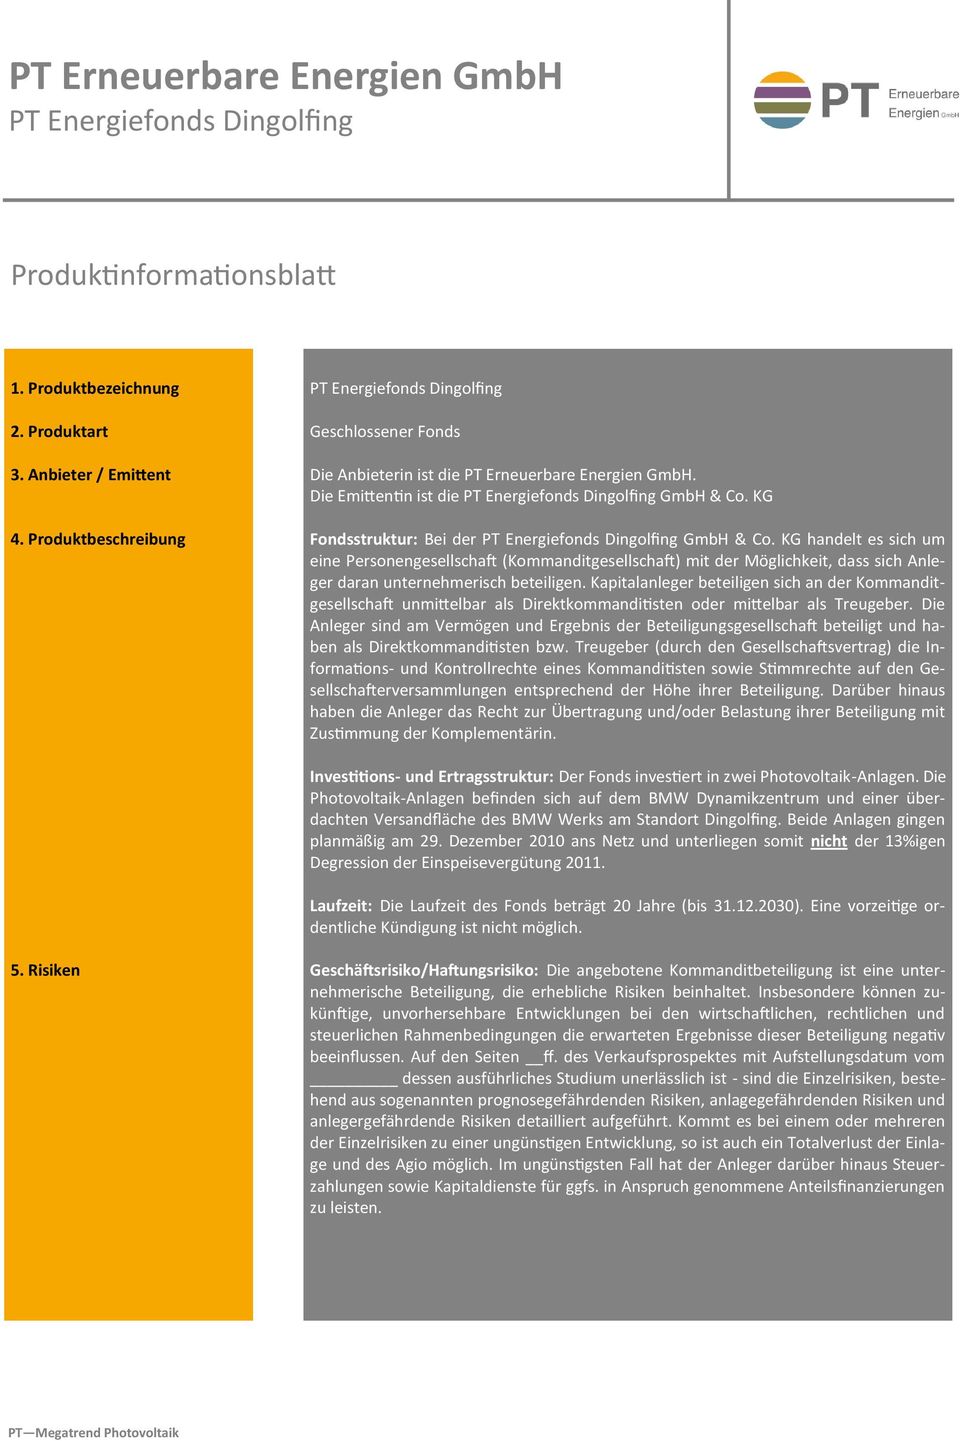 KG Fondsstruktur: Bei der PT Energiefonds Dingolfing GmbH & Co.